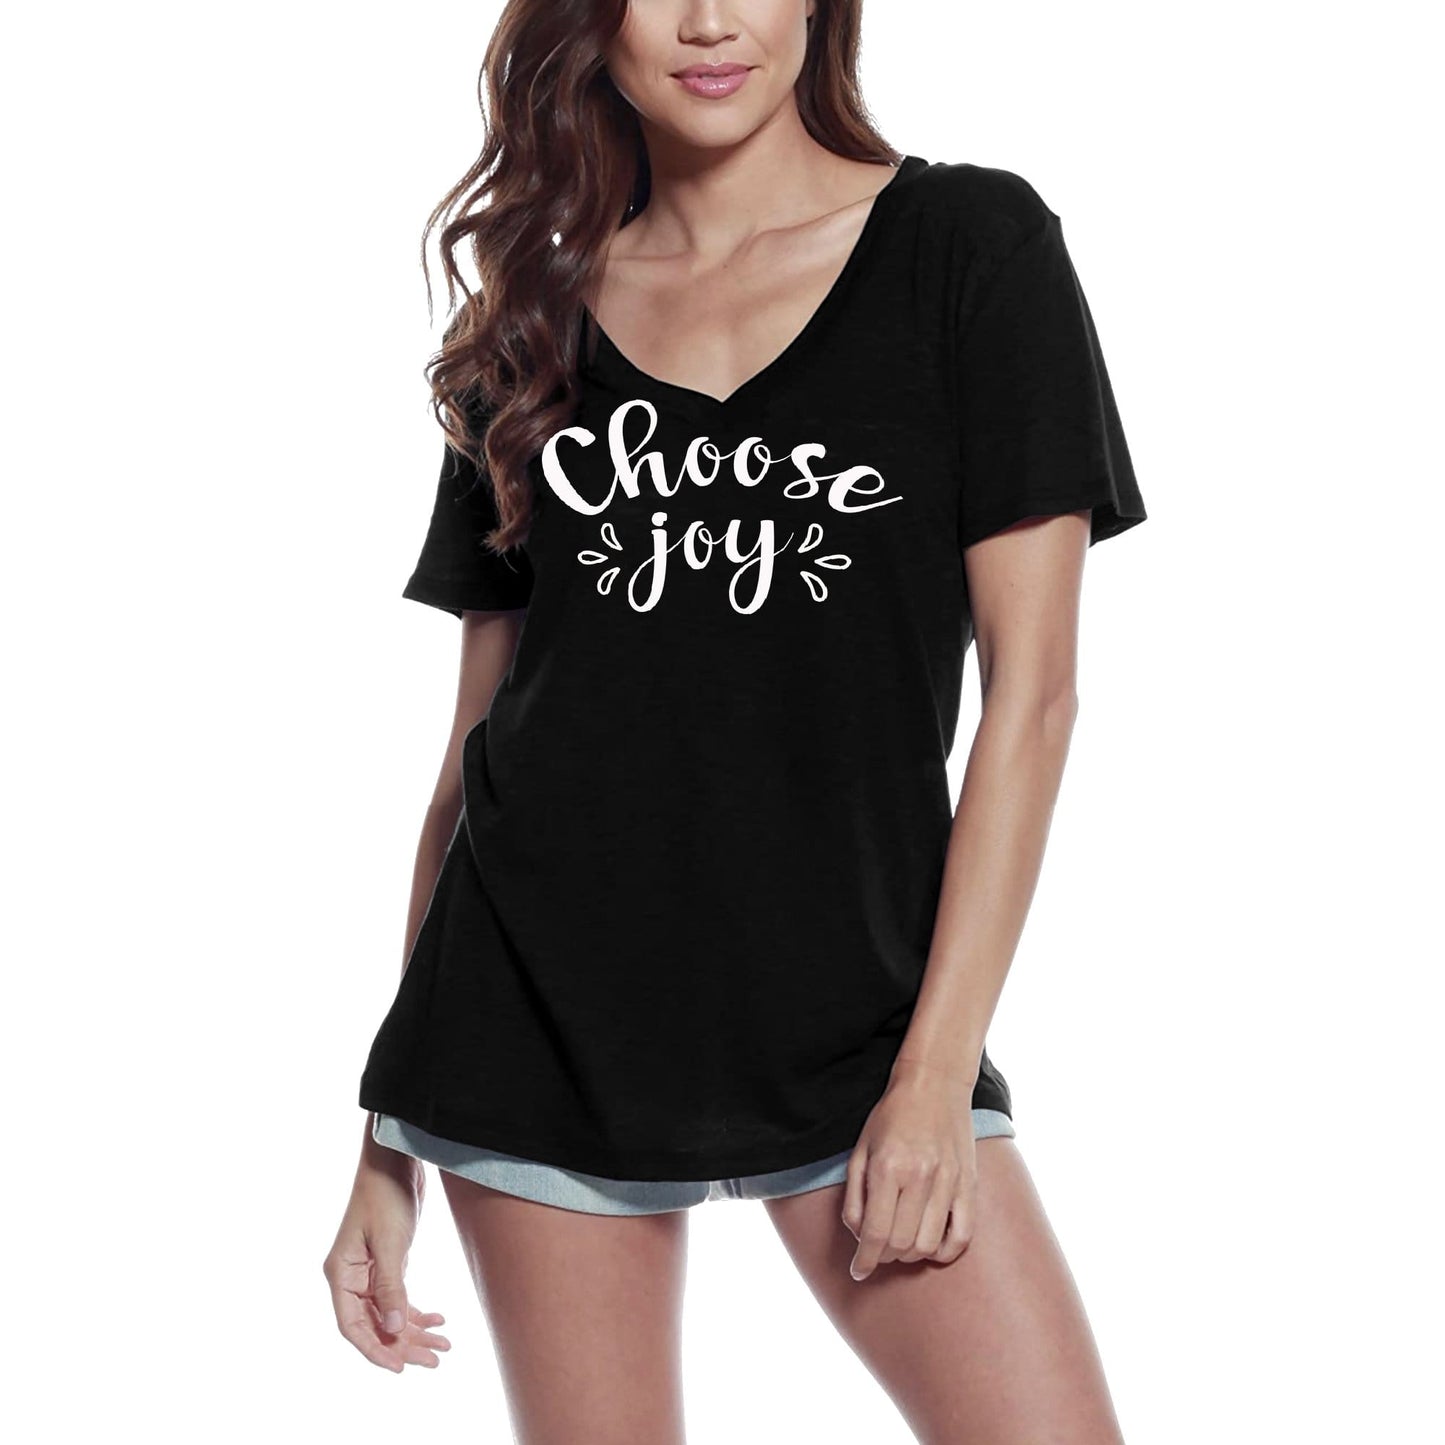 ULTRABASIC Women's T-Shirt Choose Joy - Short Sleeve Tee Shirt Tops